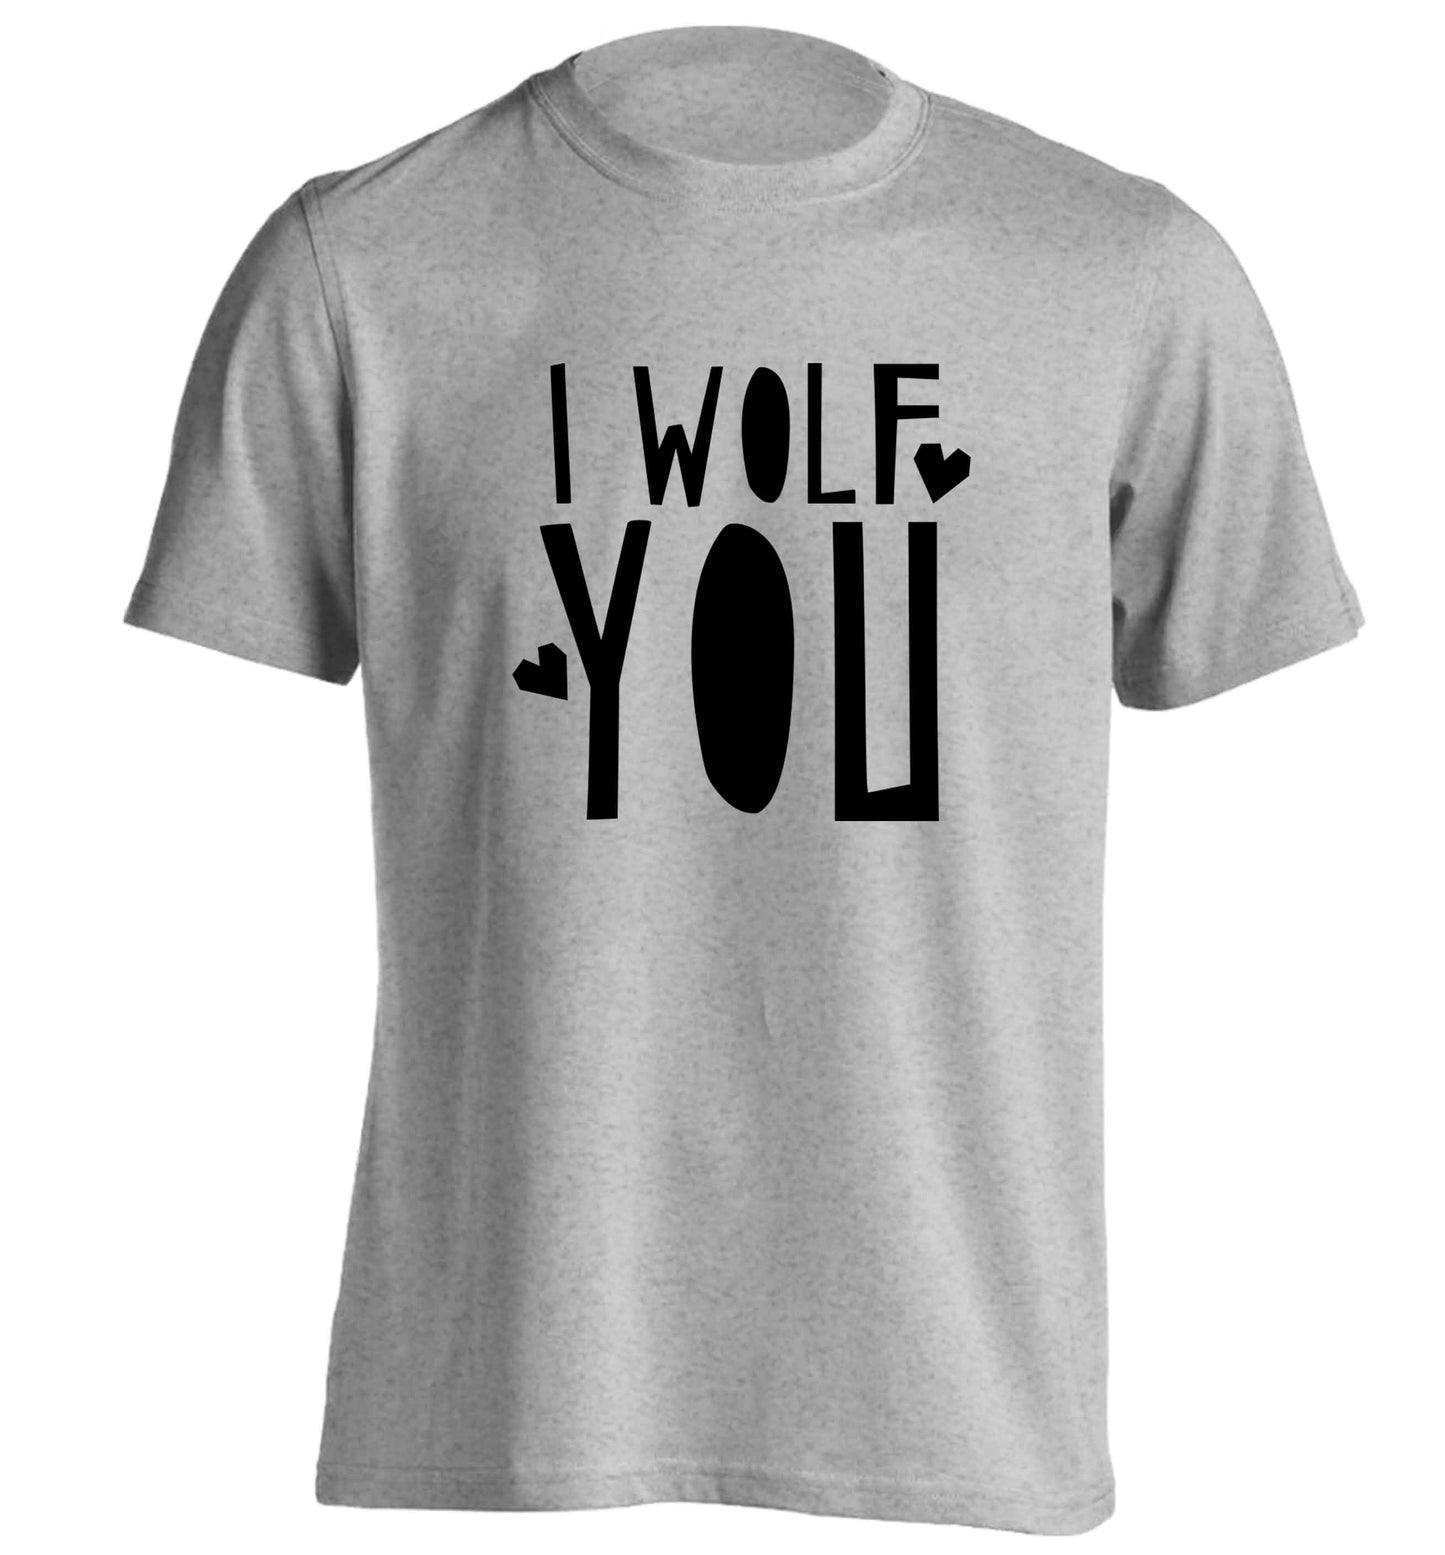 I wolf you adults unisex grey Tshirt 2XL